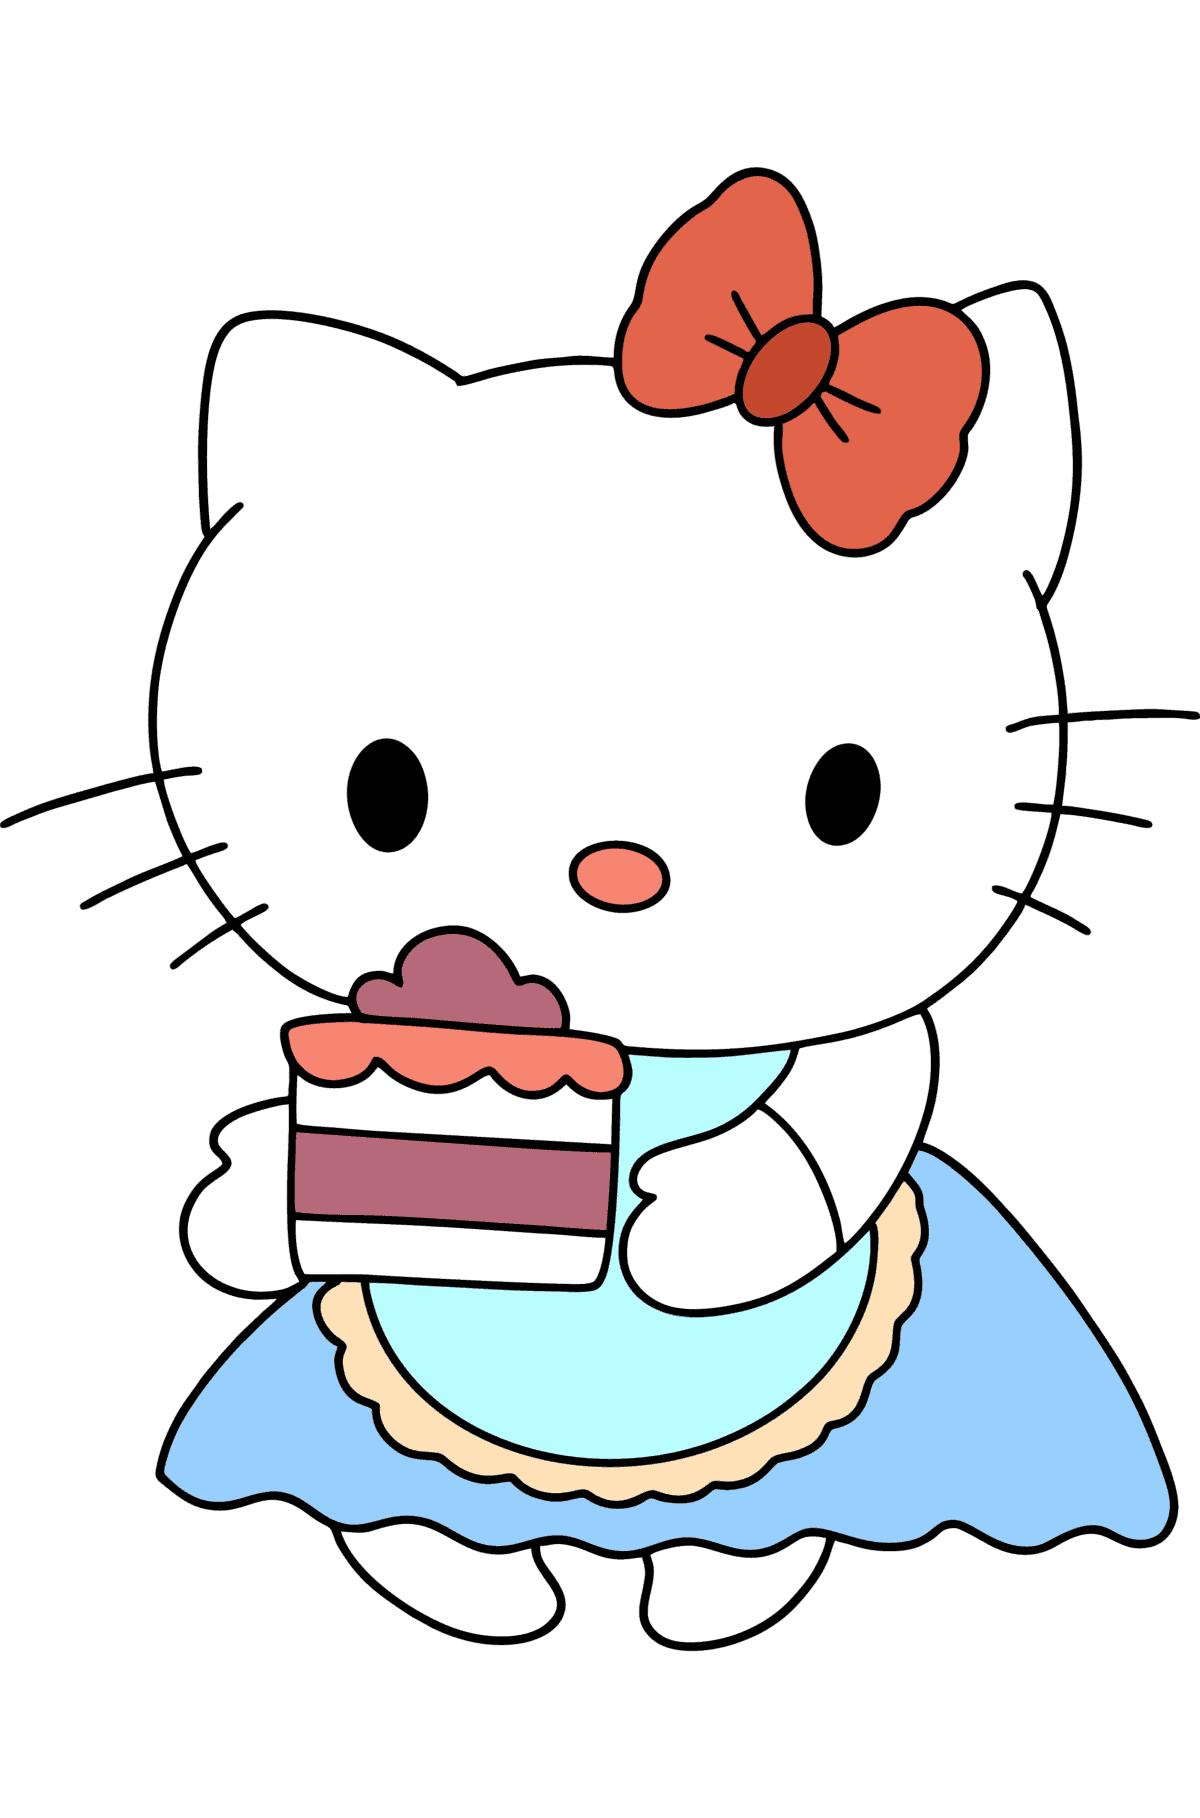 Ausmalbild Hello Kitty und Kuchen - Malvorlagen für Kinder